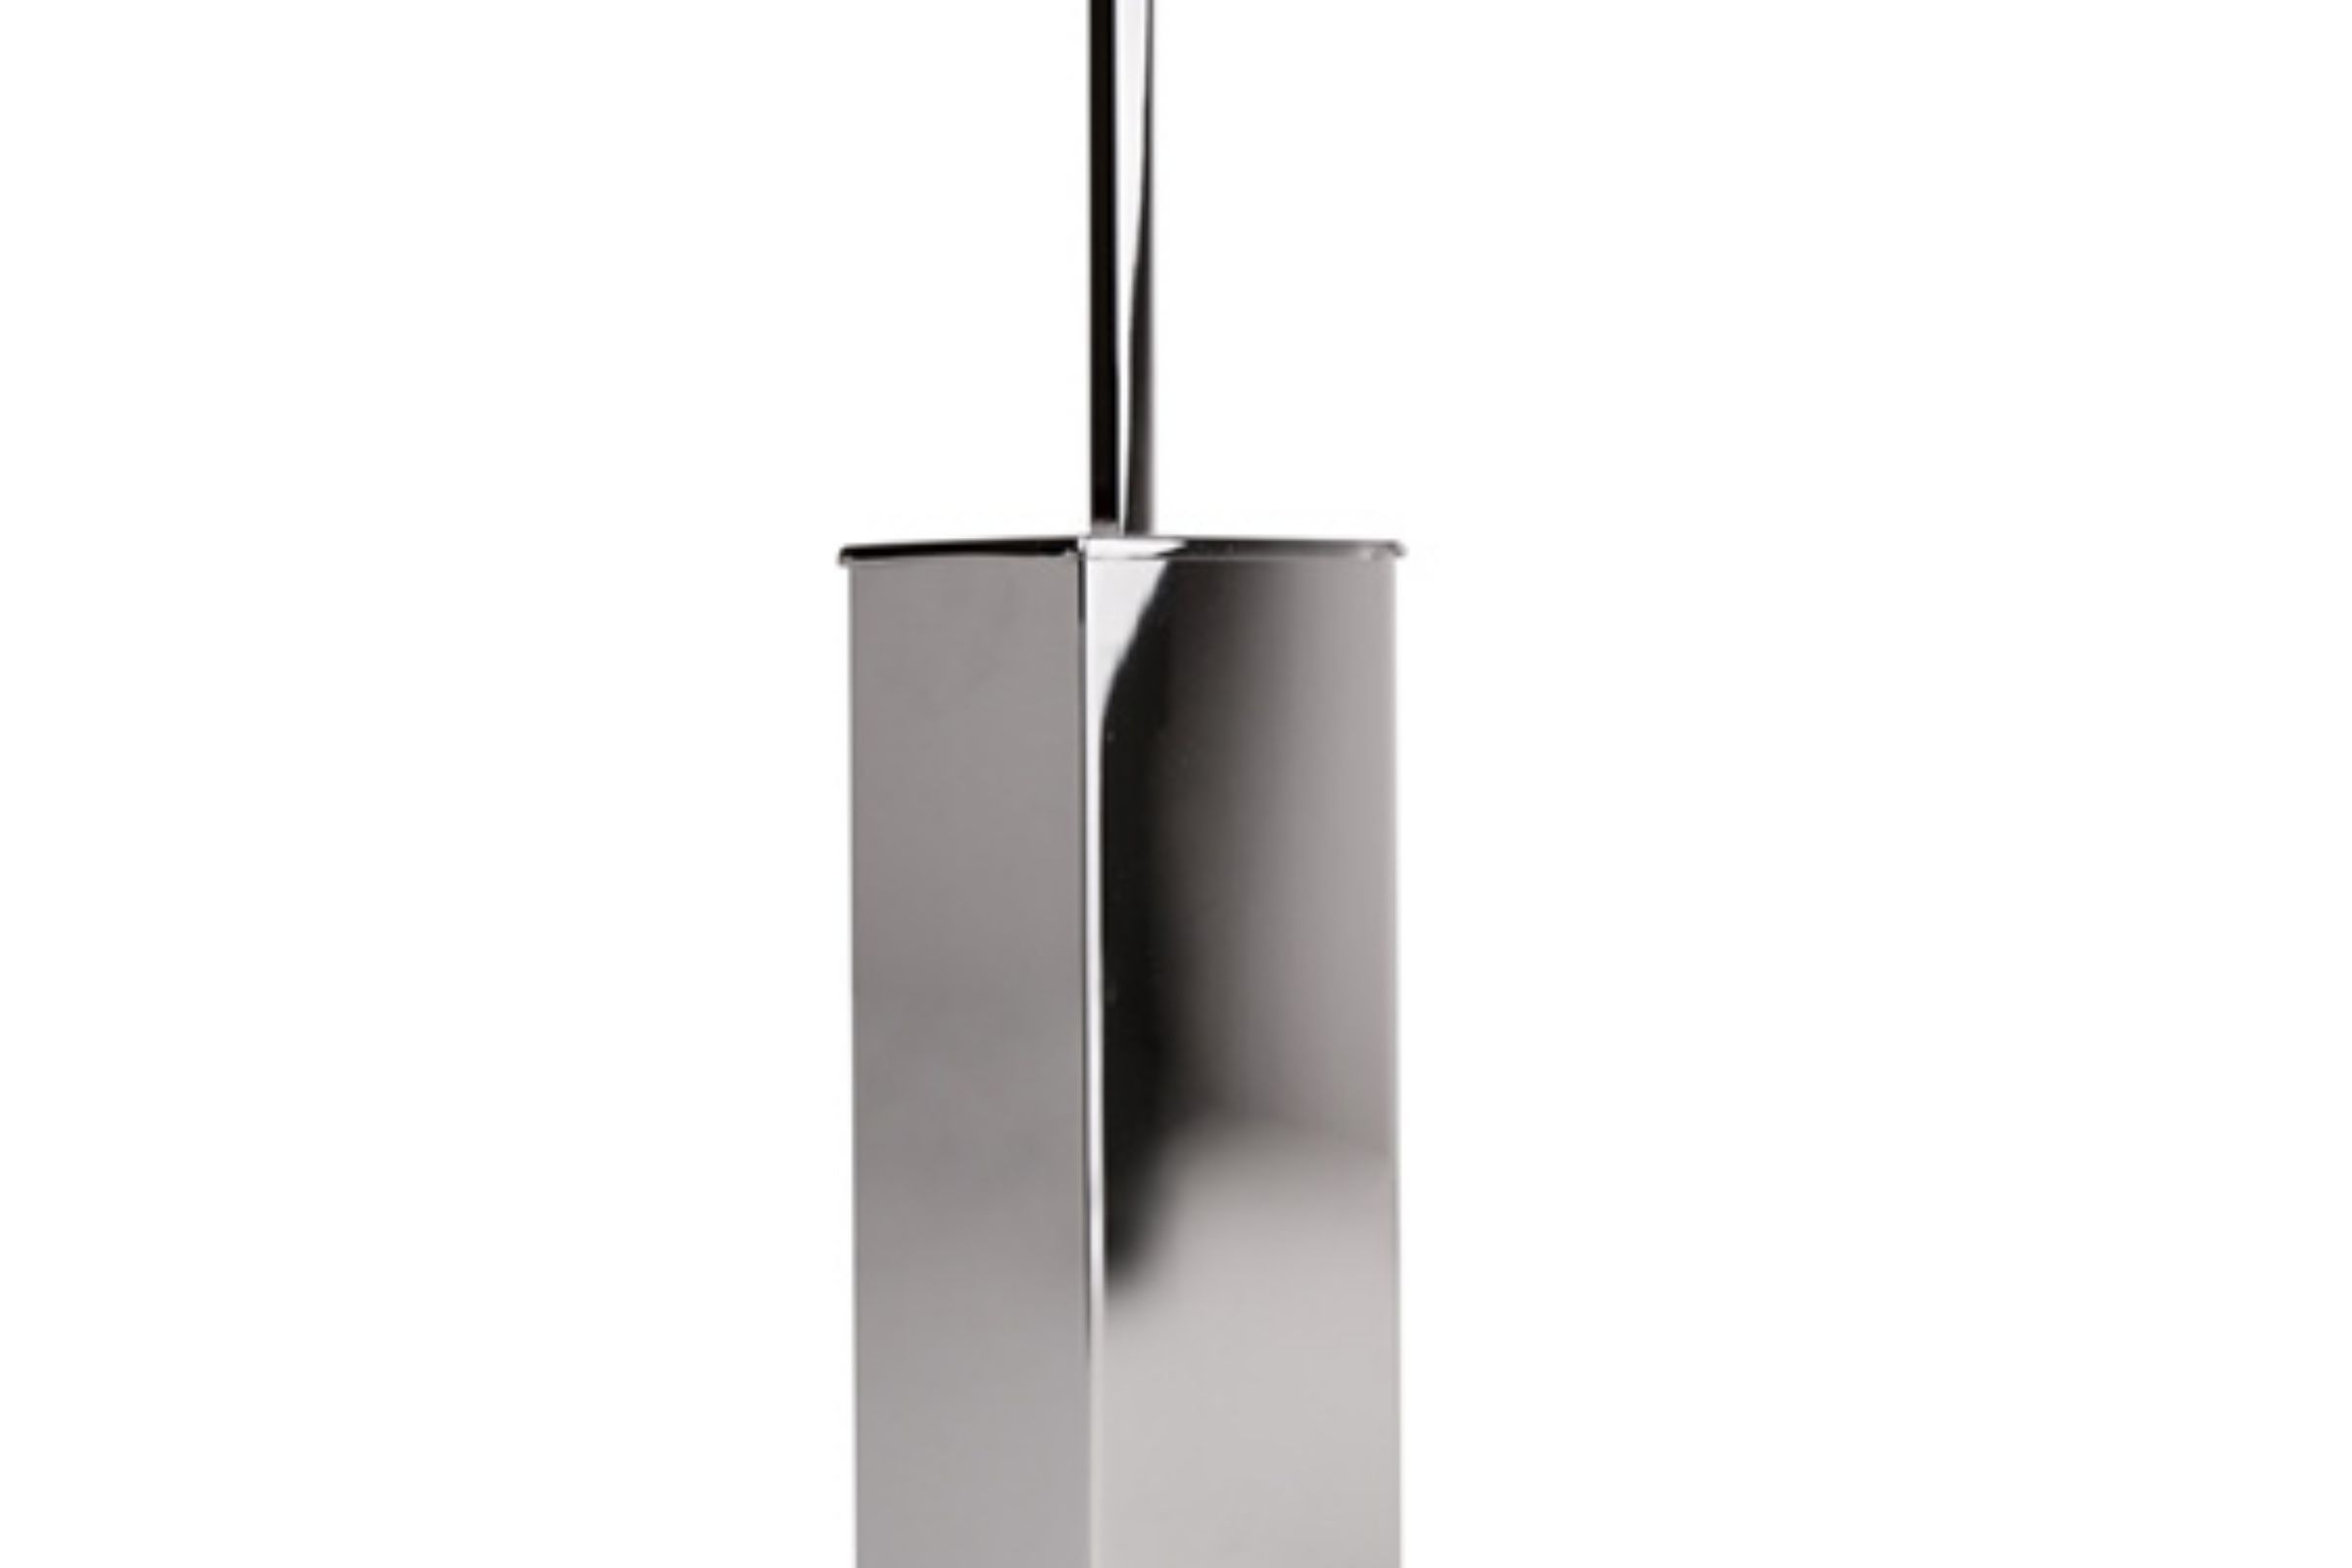 floor standing toilet brush holder in metal cm. 8x8x36 - porta scopino metallo appoggio fl oor standing toilet brush holder in metal cm. 8x8x36